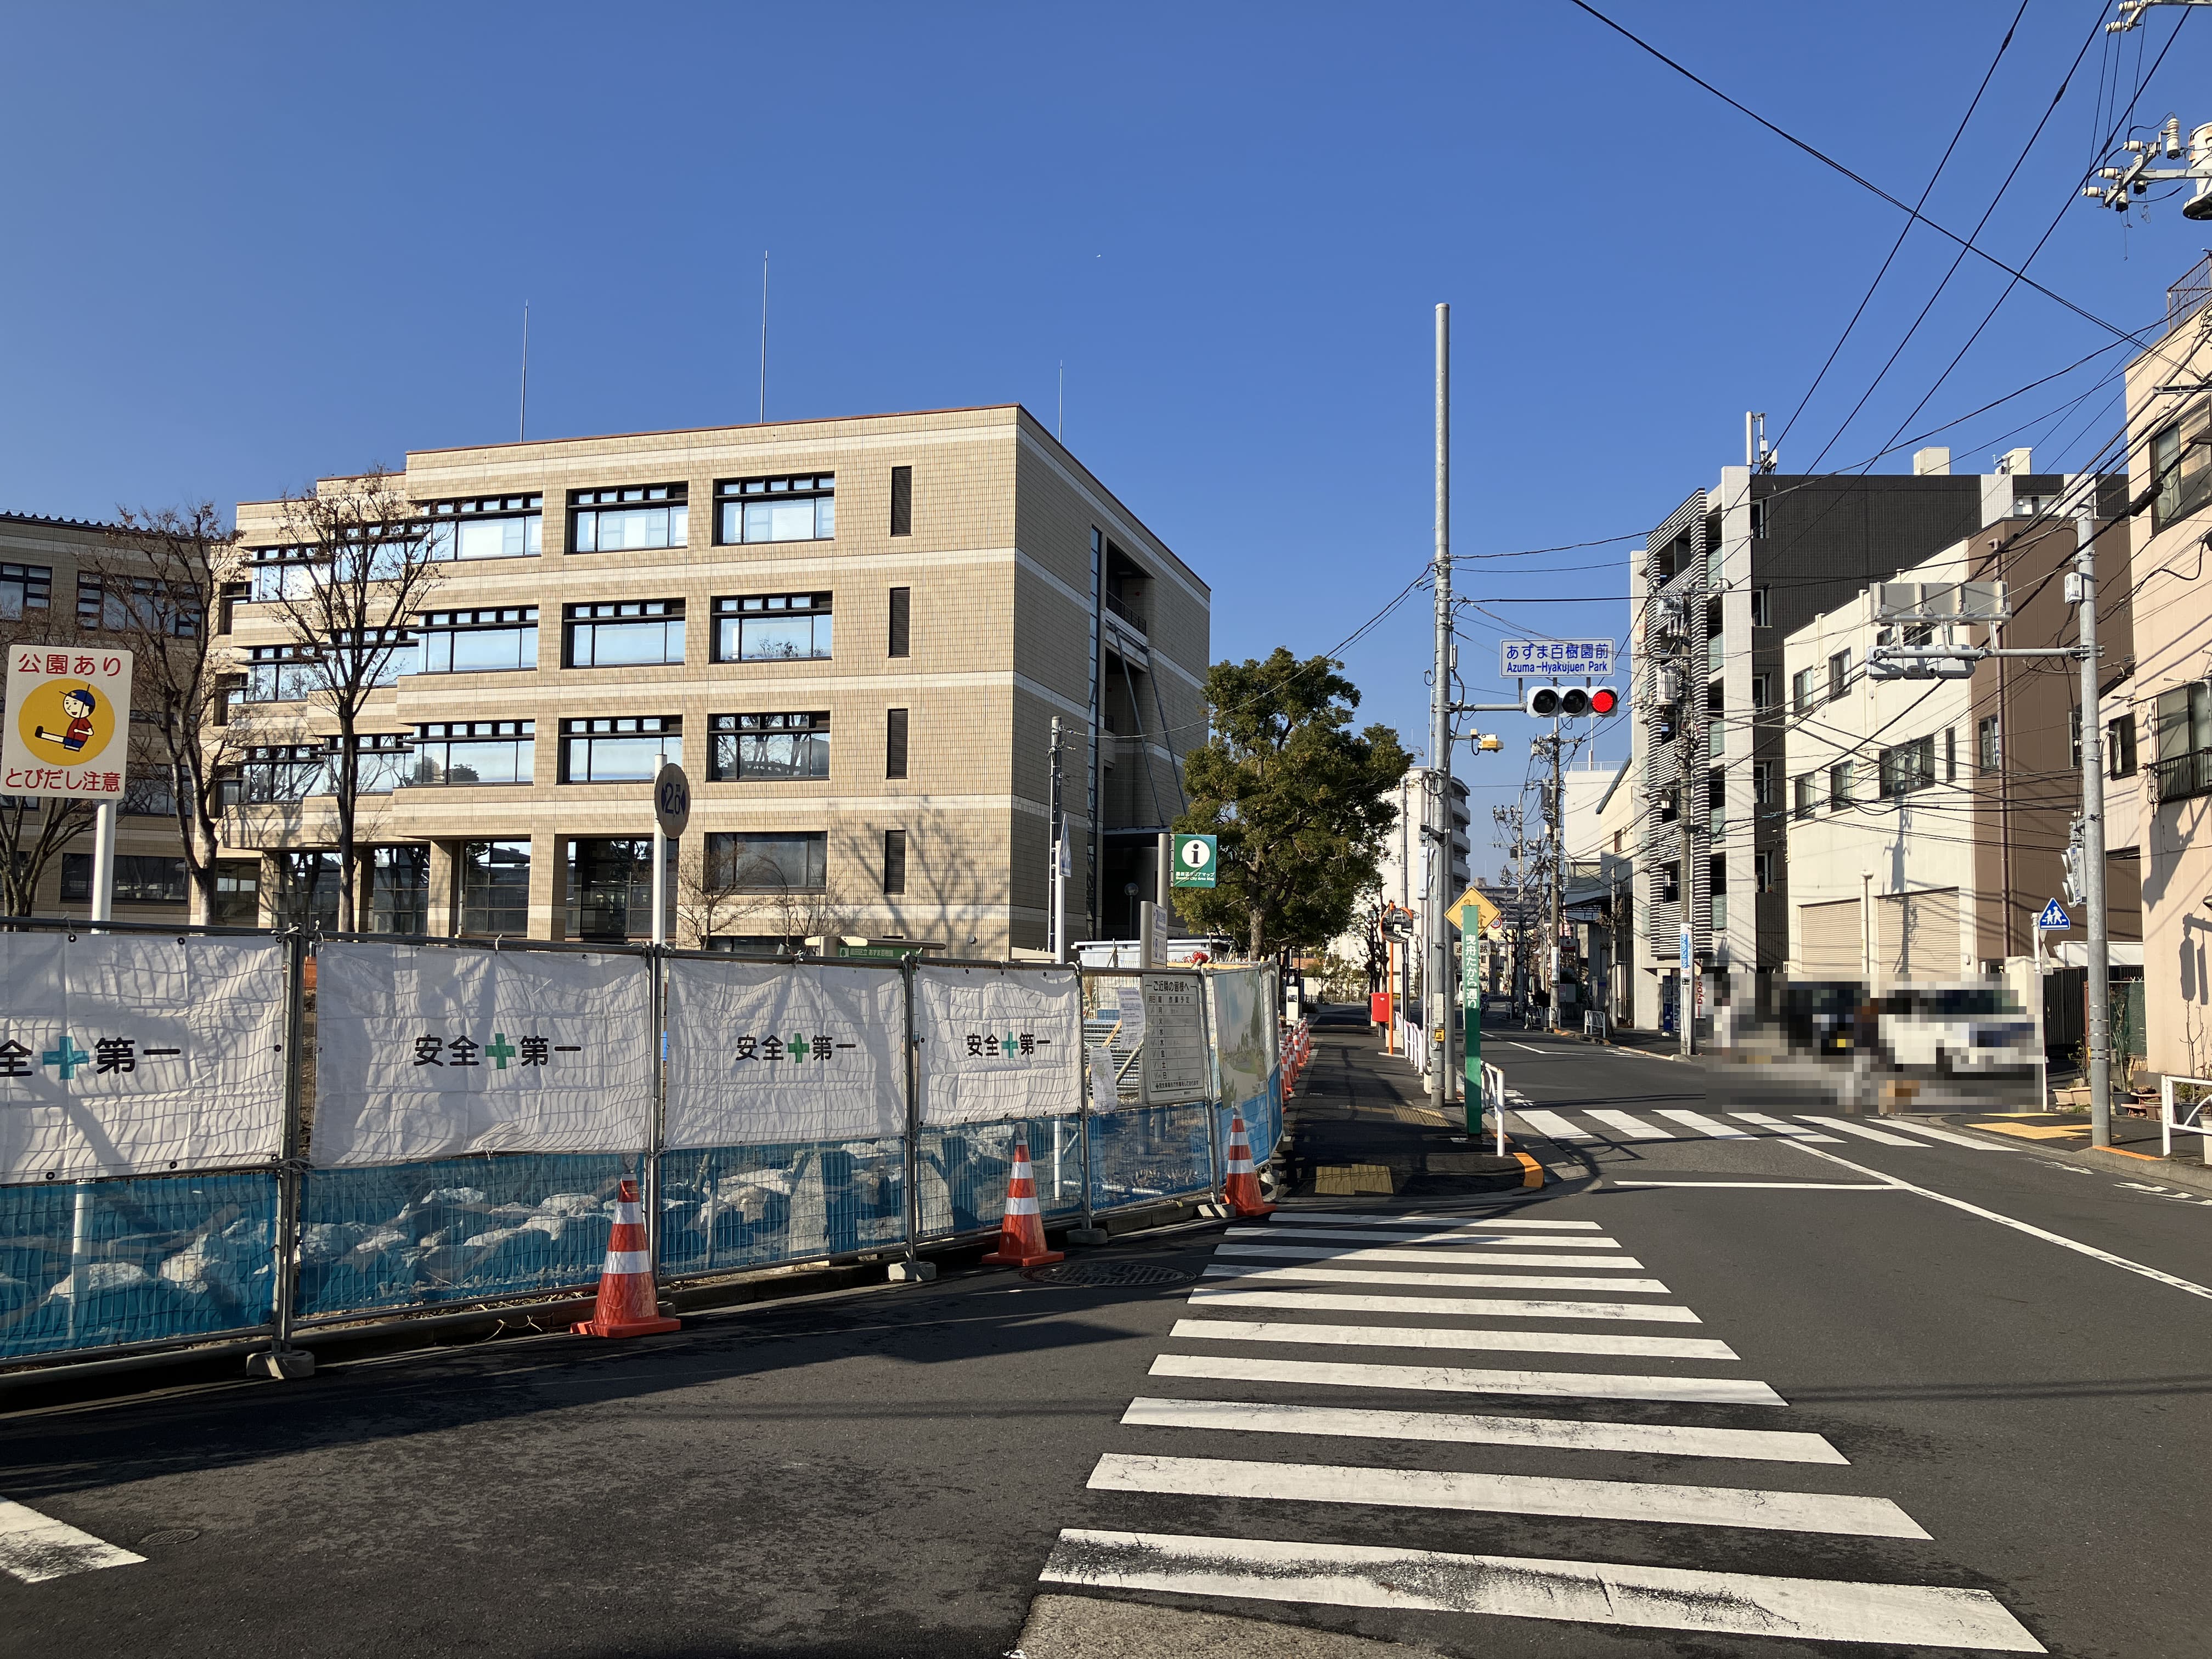 １分間ほど歩くと左手に見えてくるベージュの５階建ての建物が、千葉大学墨田サテライトキャンパスです